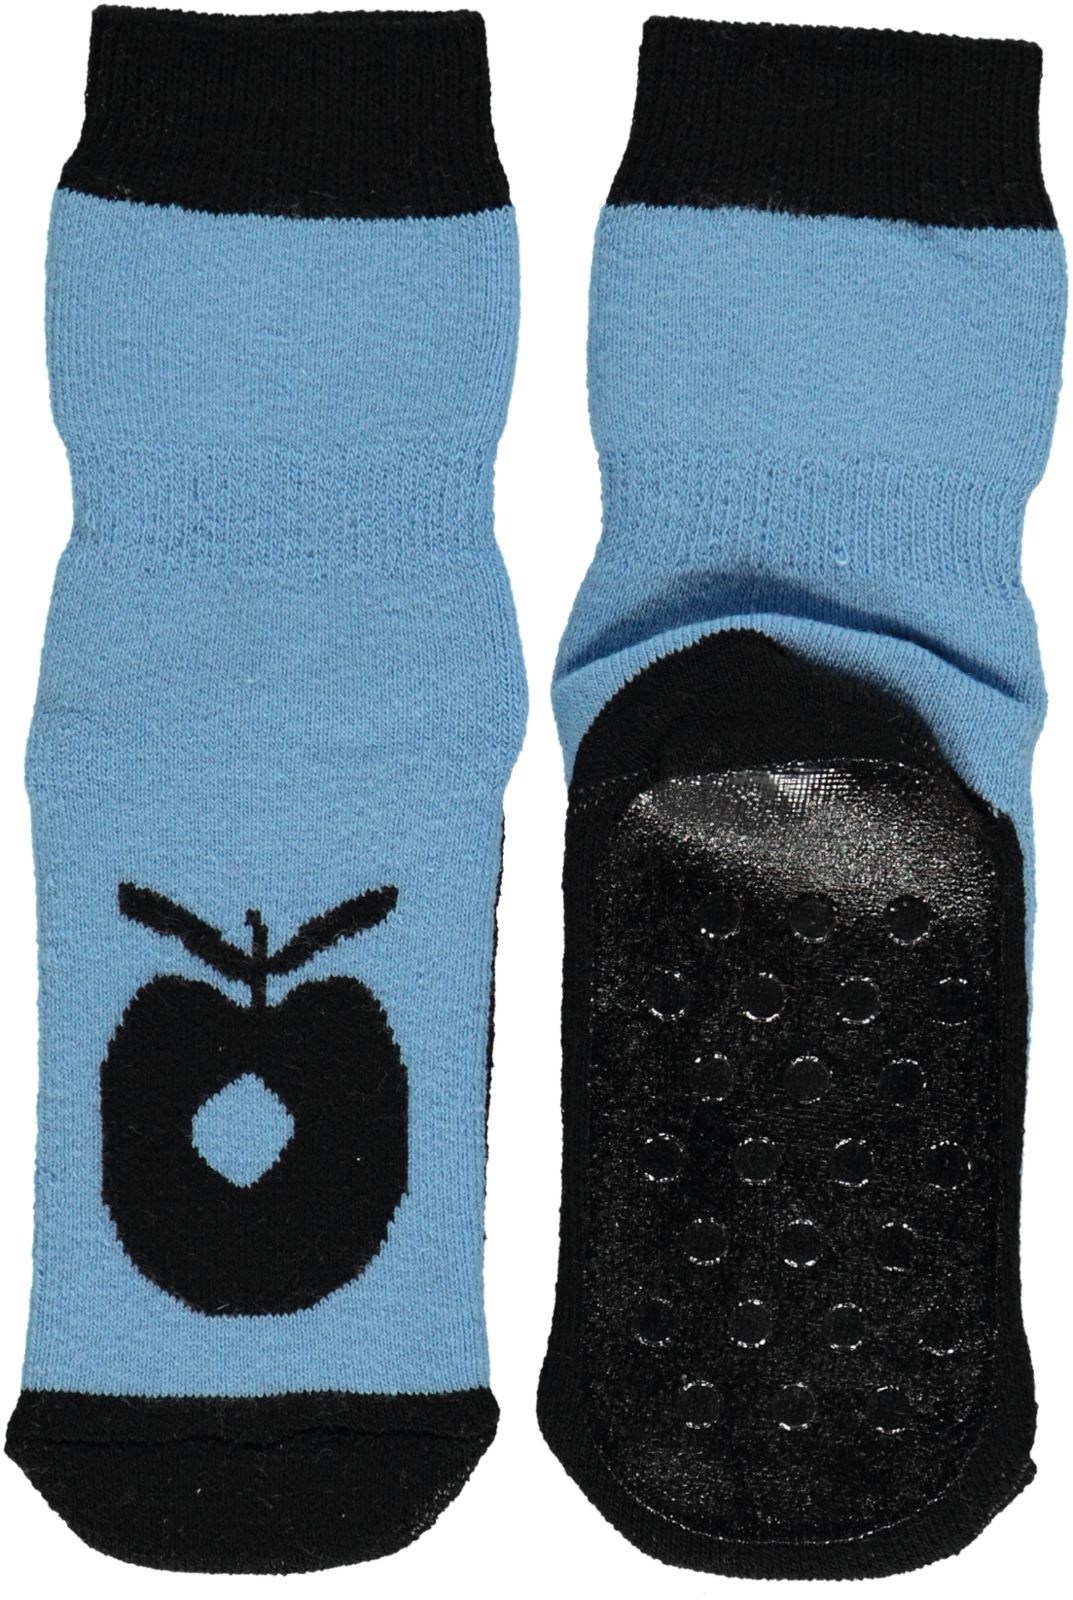 Anti-Rutsch Knöchel Socken mit grossen Apfel